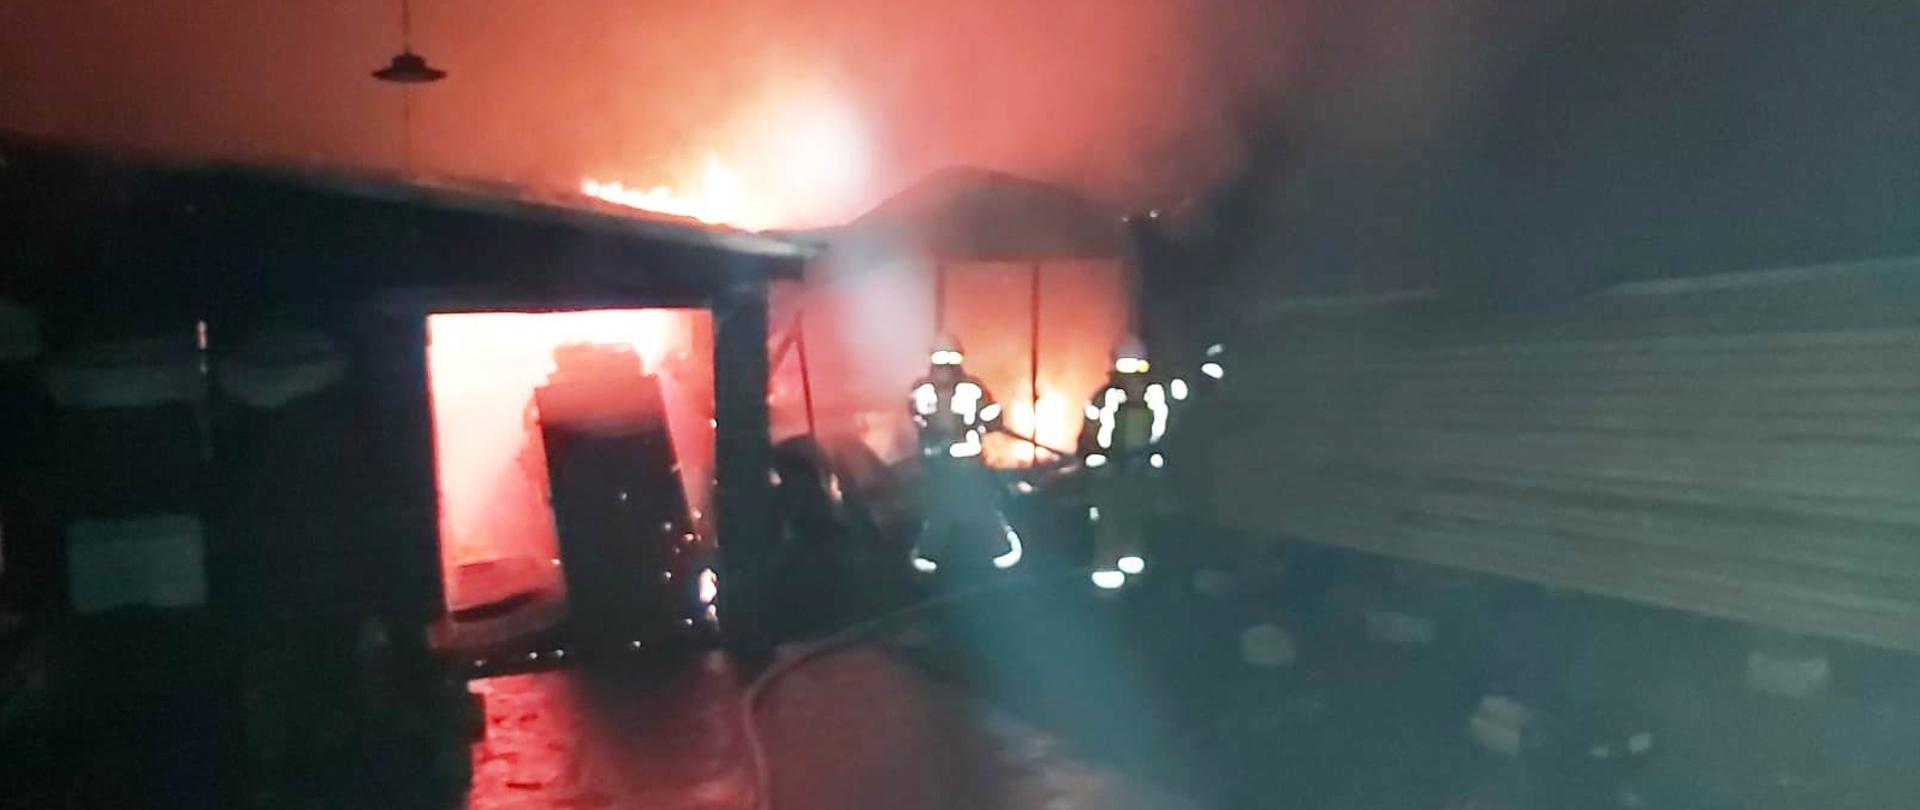 Ogień wewnątrz budynku a obok strażacy